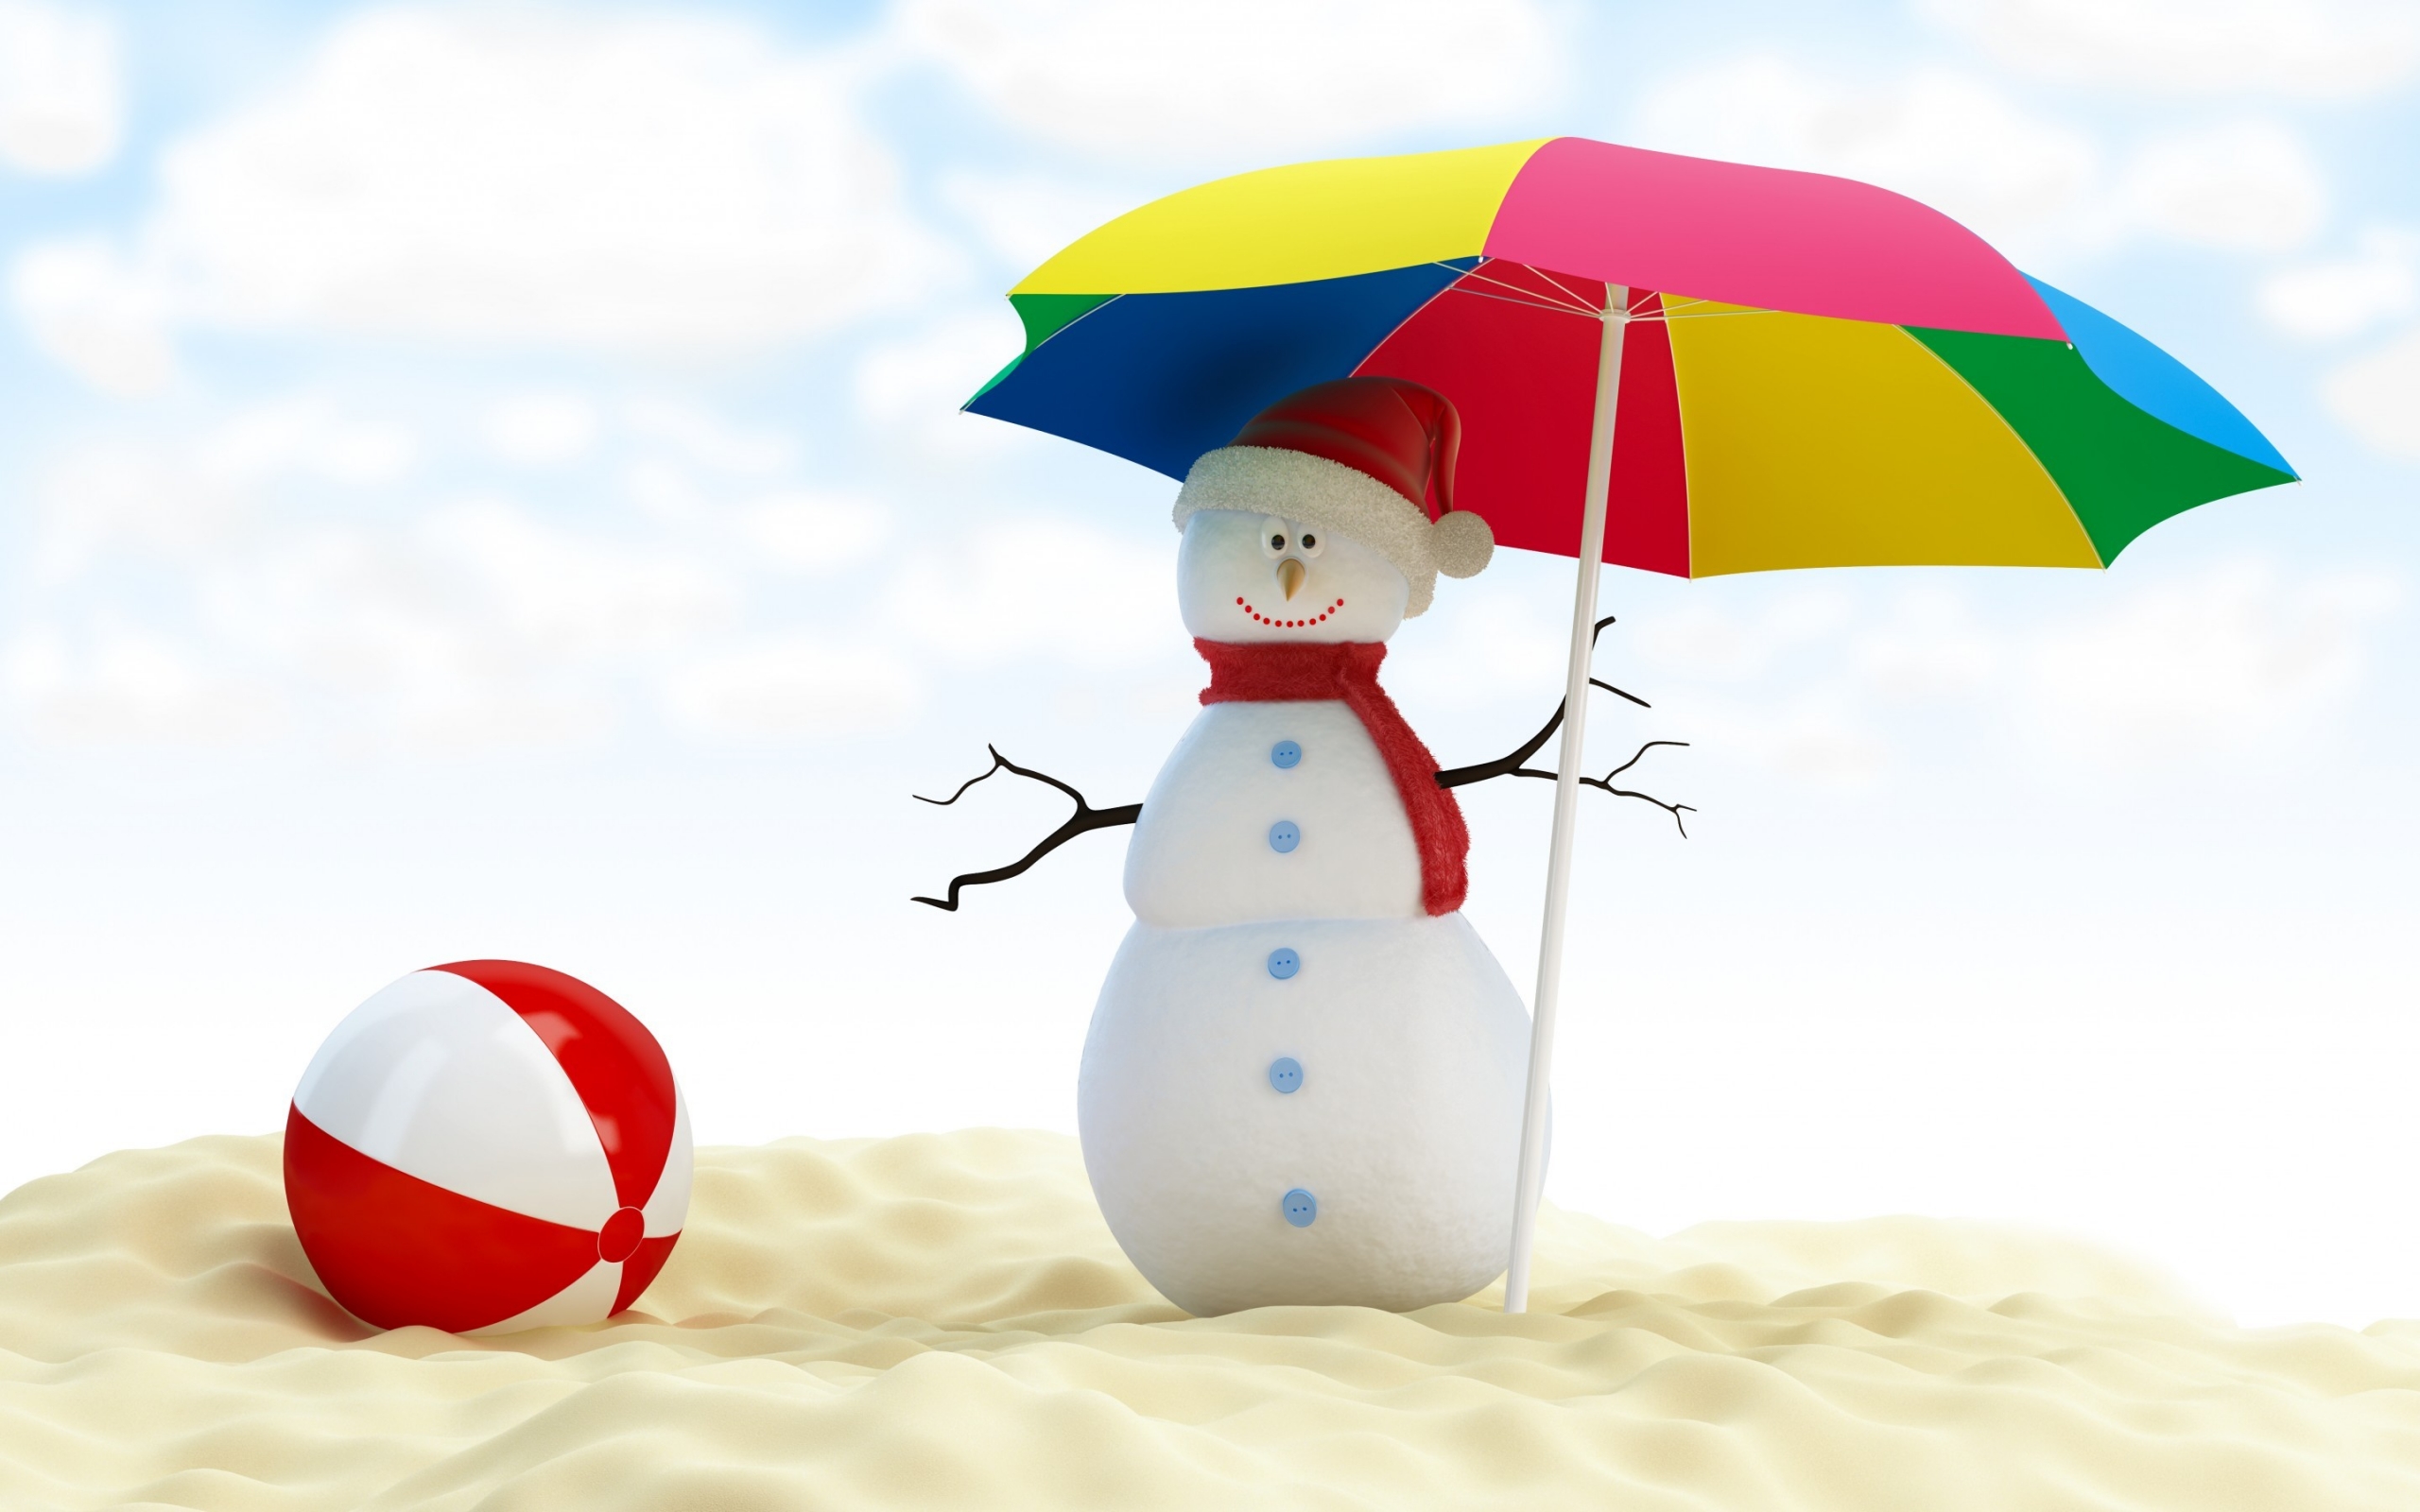 Summer Snowman for 2560 x 1600 widescreen resolution